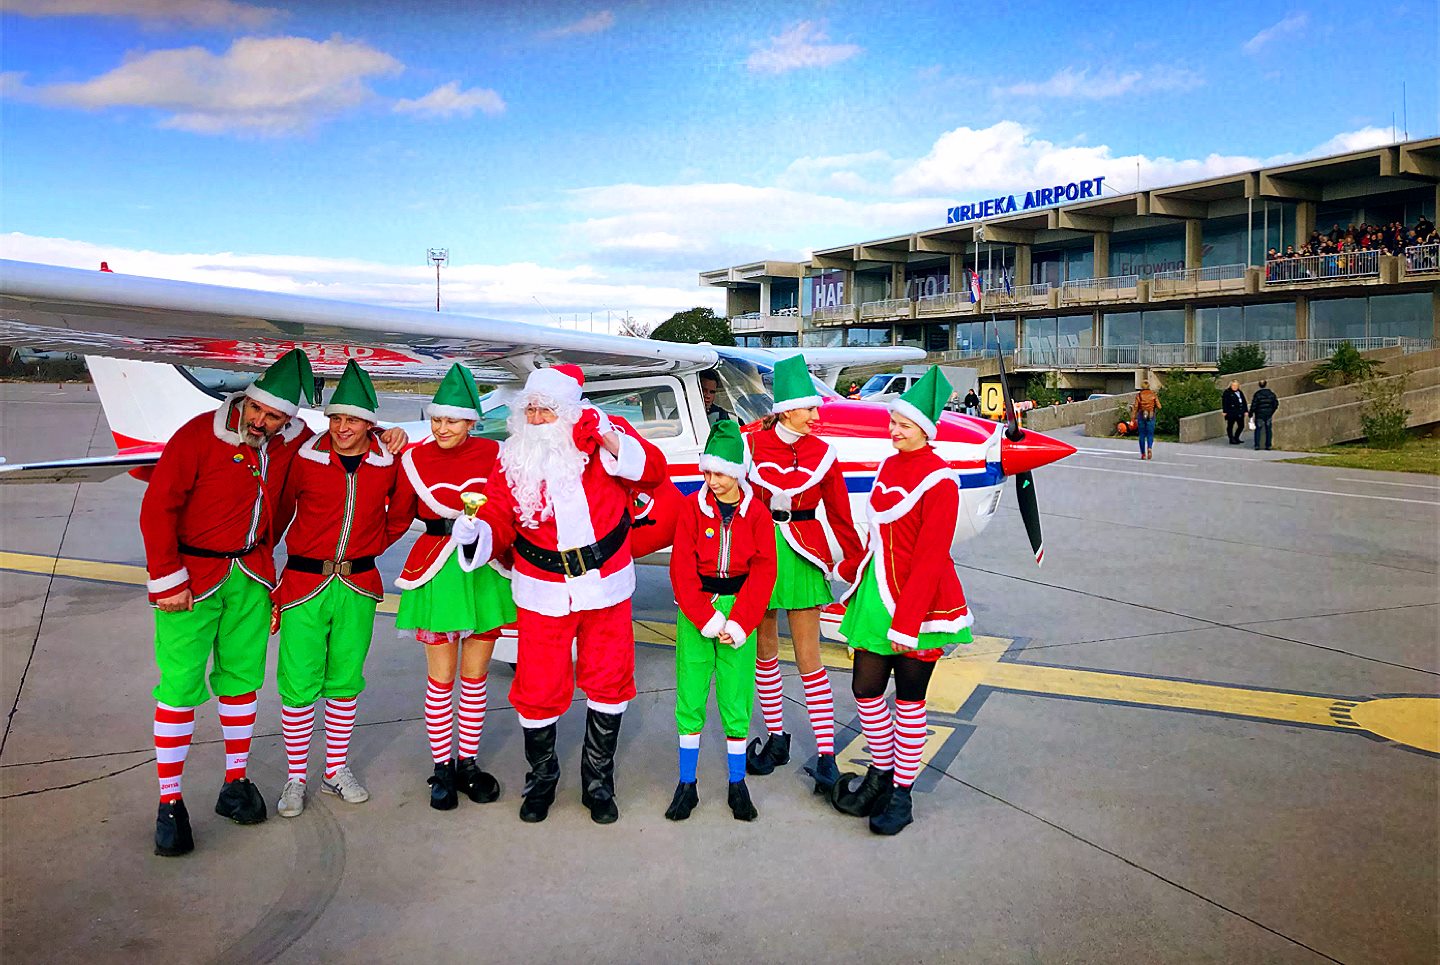 Santa Claus visited Rijeka airport!